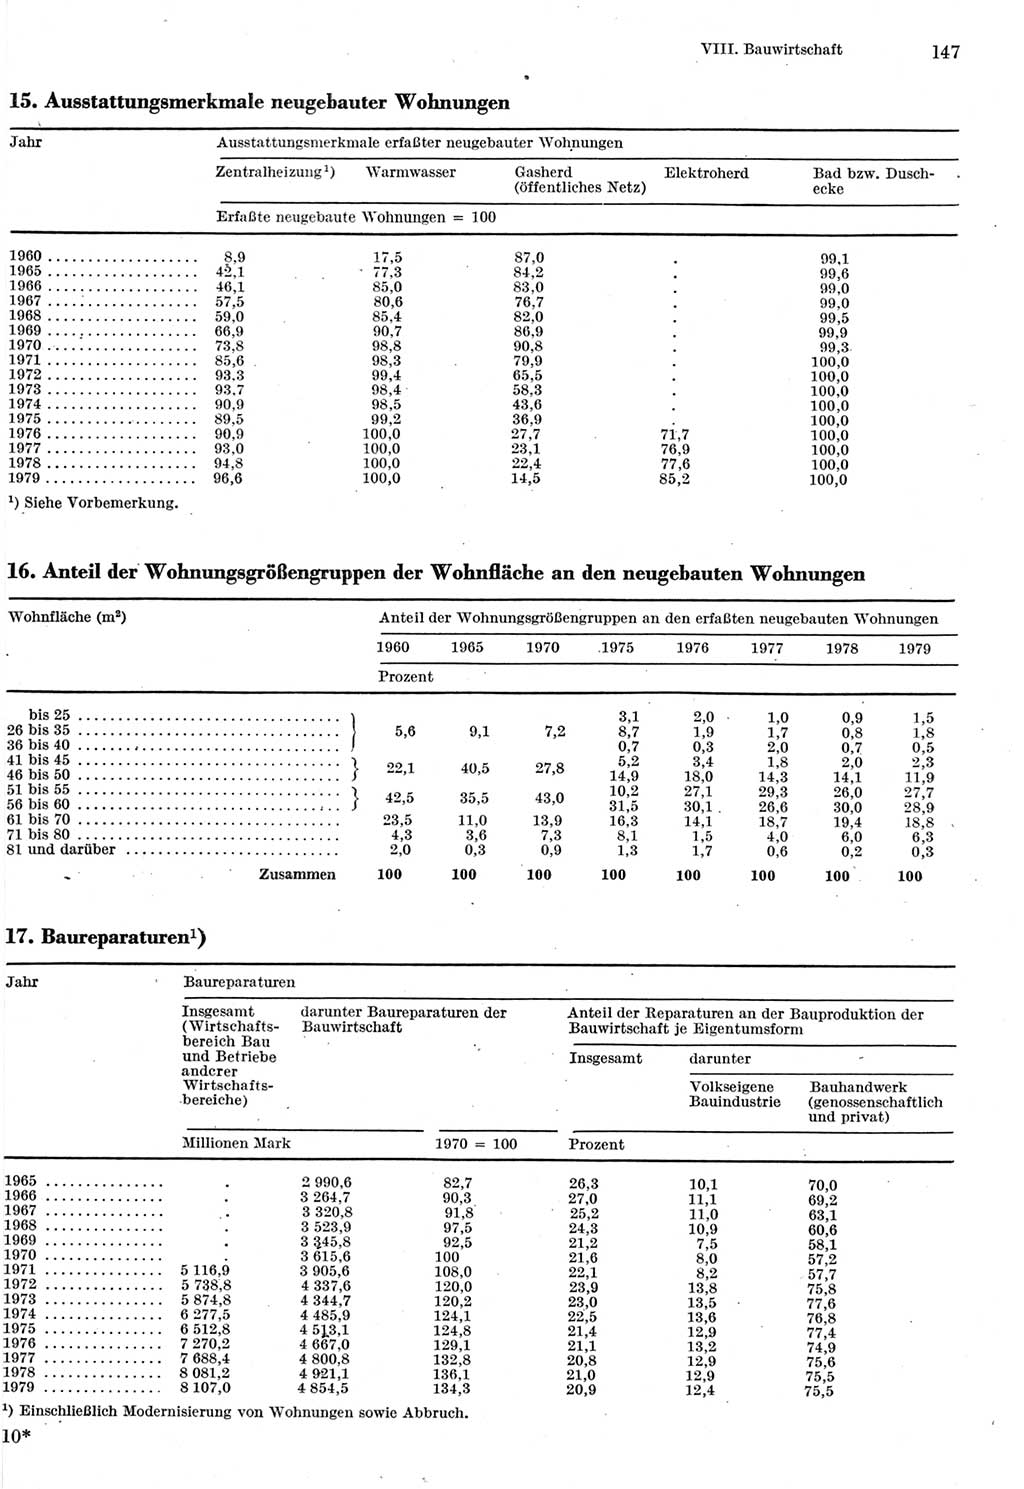 Statistisches Jahrbuch der Deutschen Demokratischen Republik (DDR) 1980, Seite 147 (Stat. Jb. DDR 1980, S. 147)